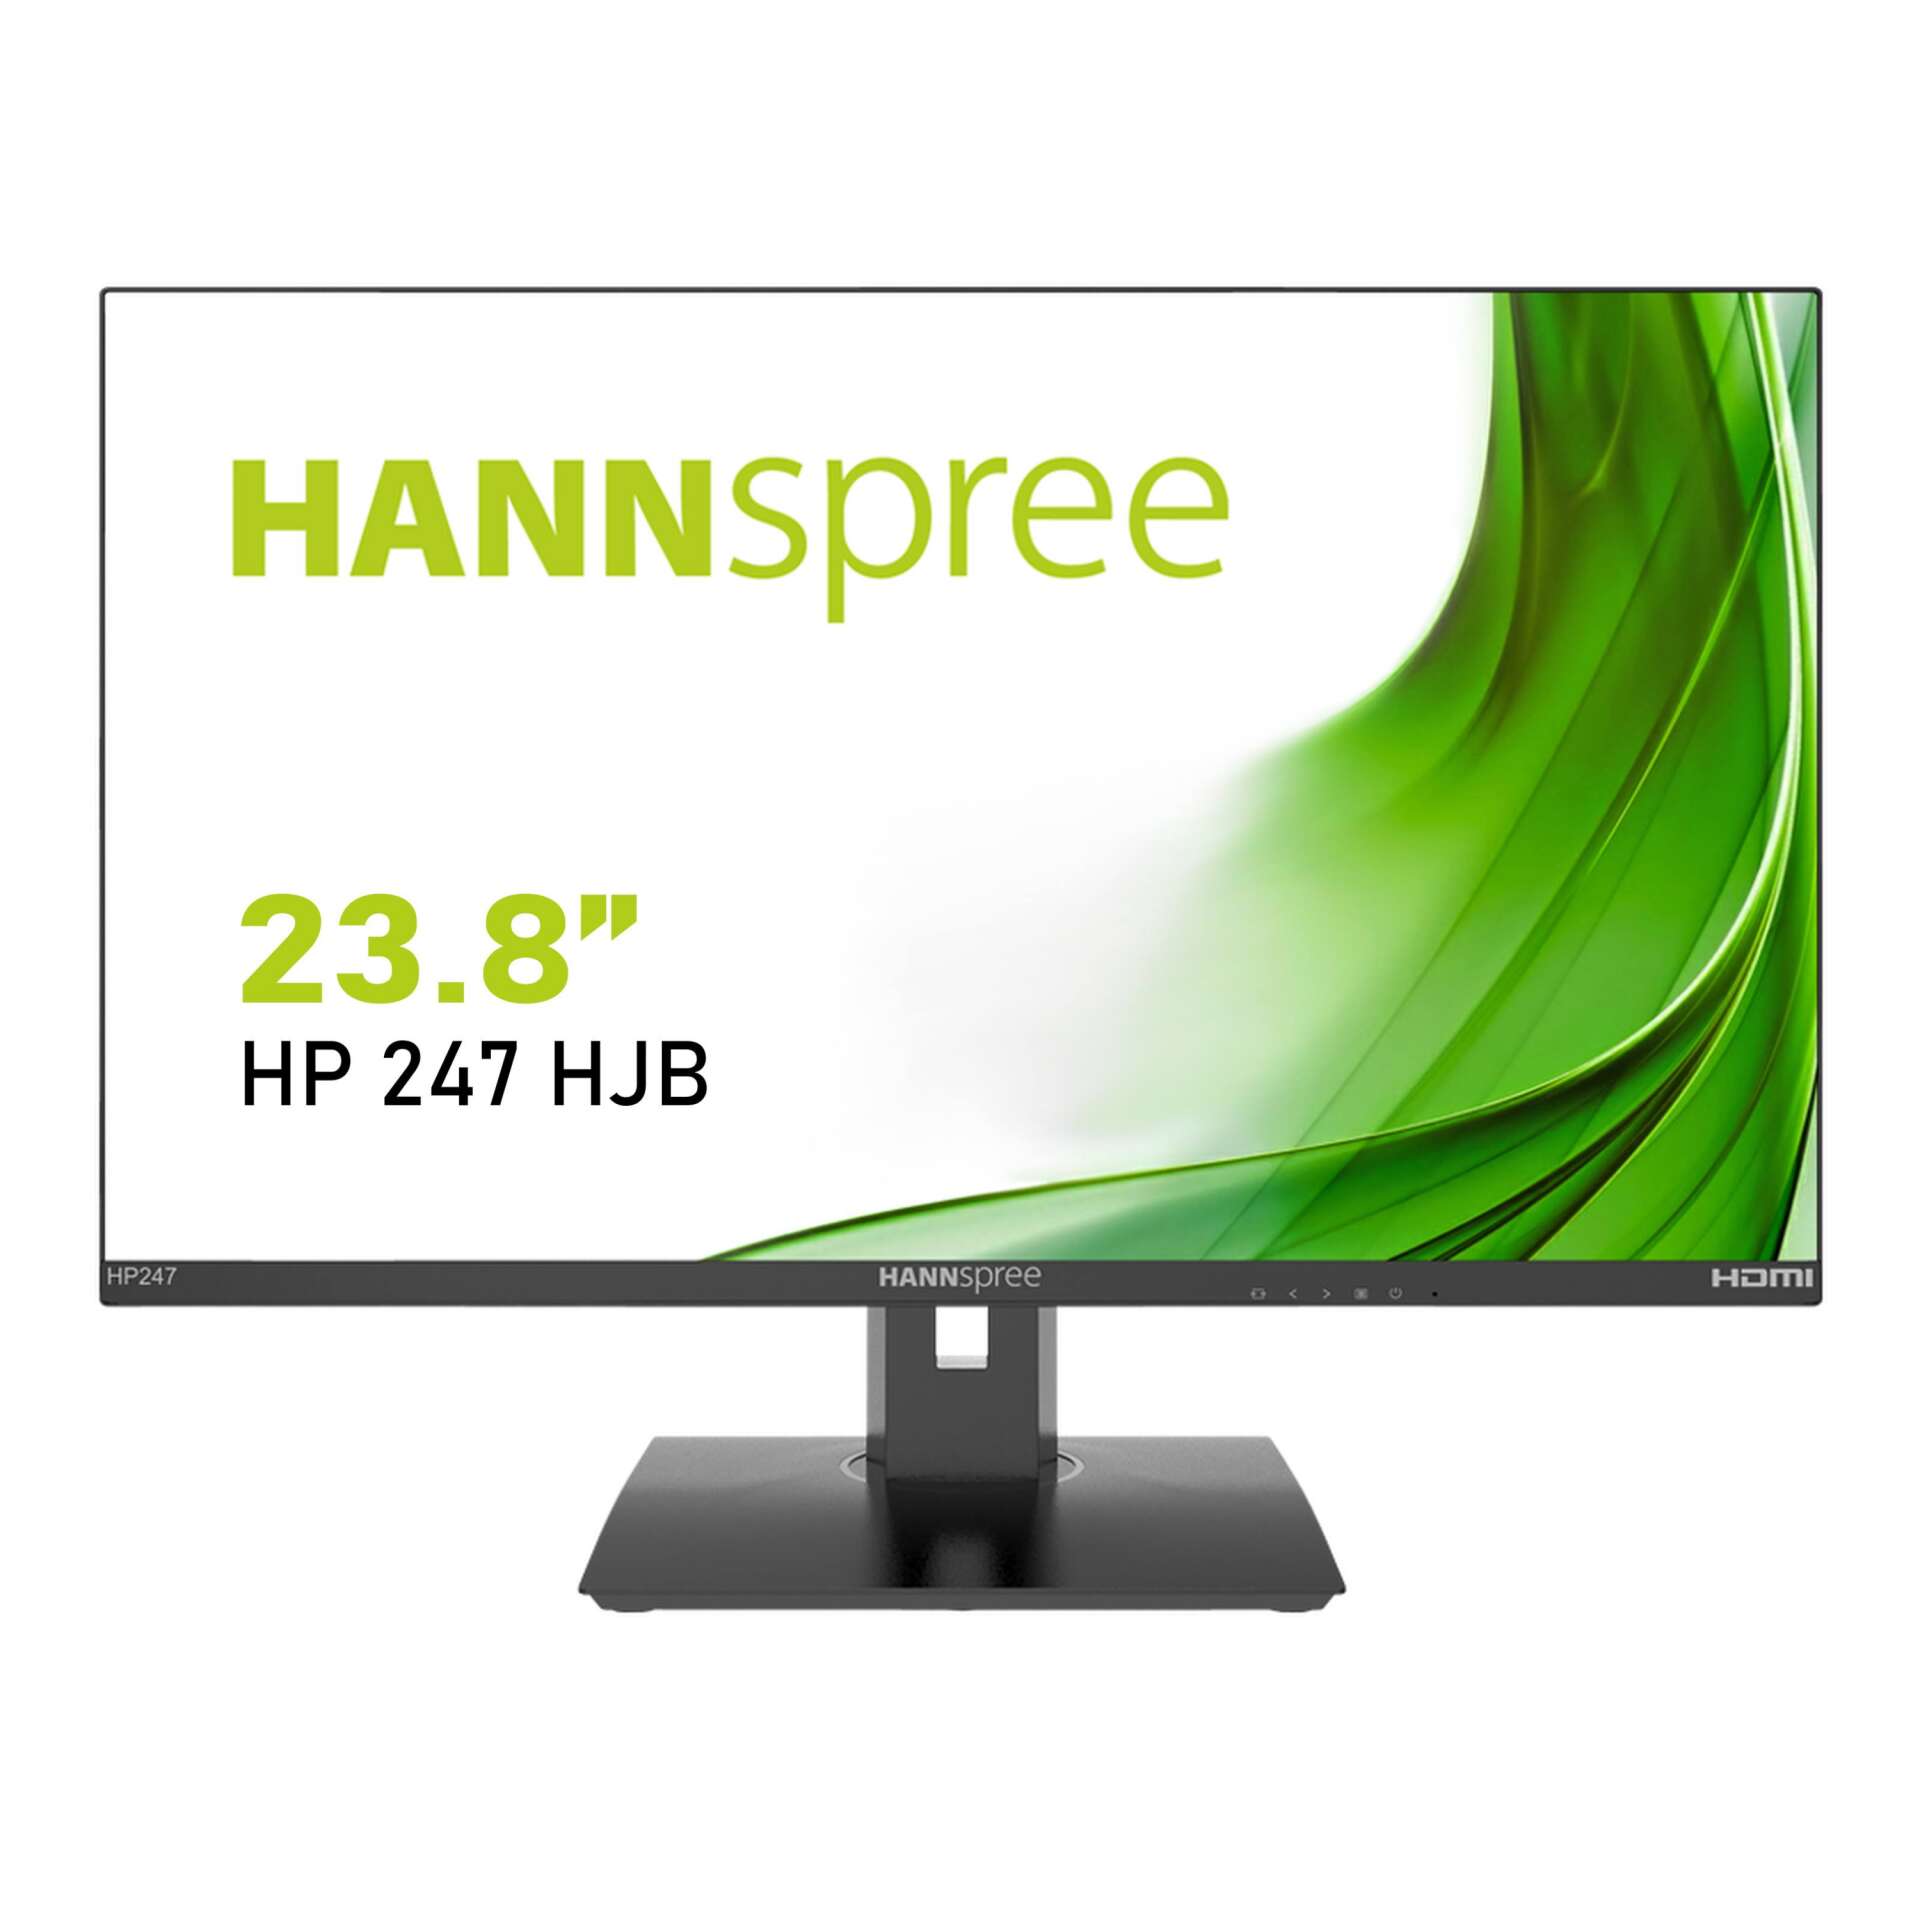 Hannspree 23.8" hp 247 hjb monitor